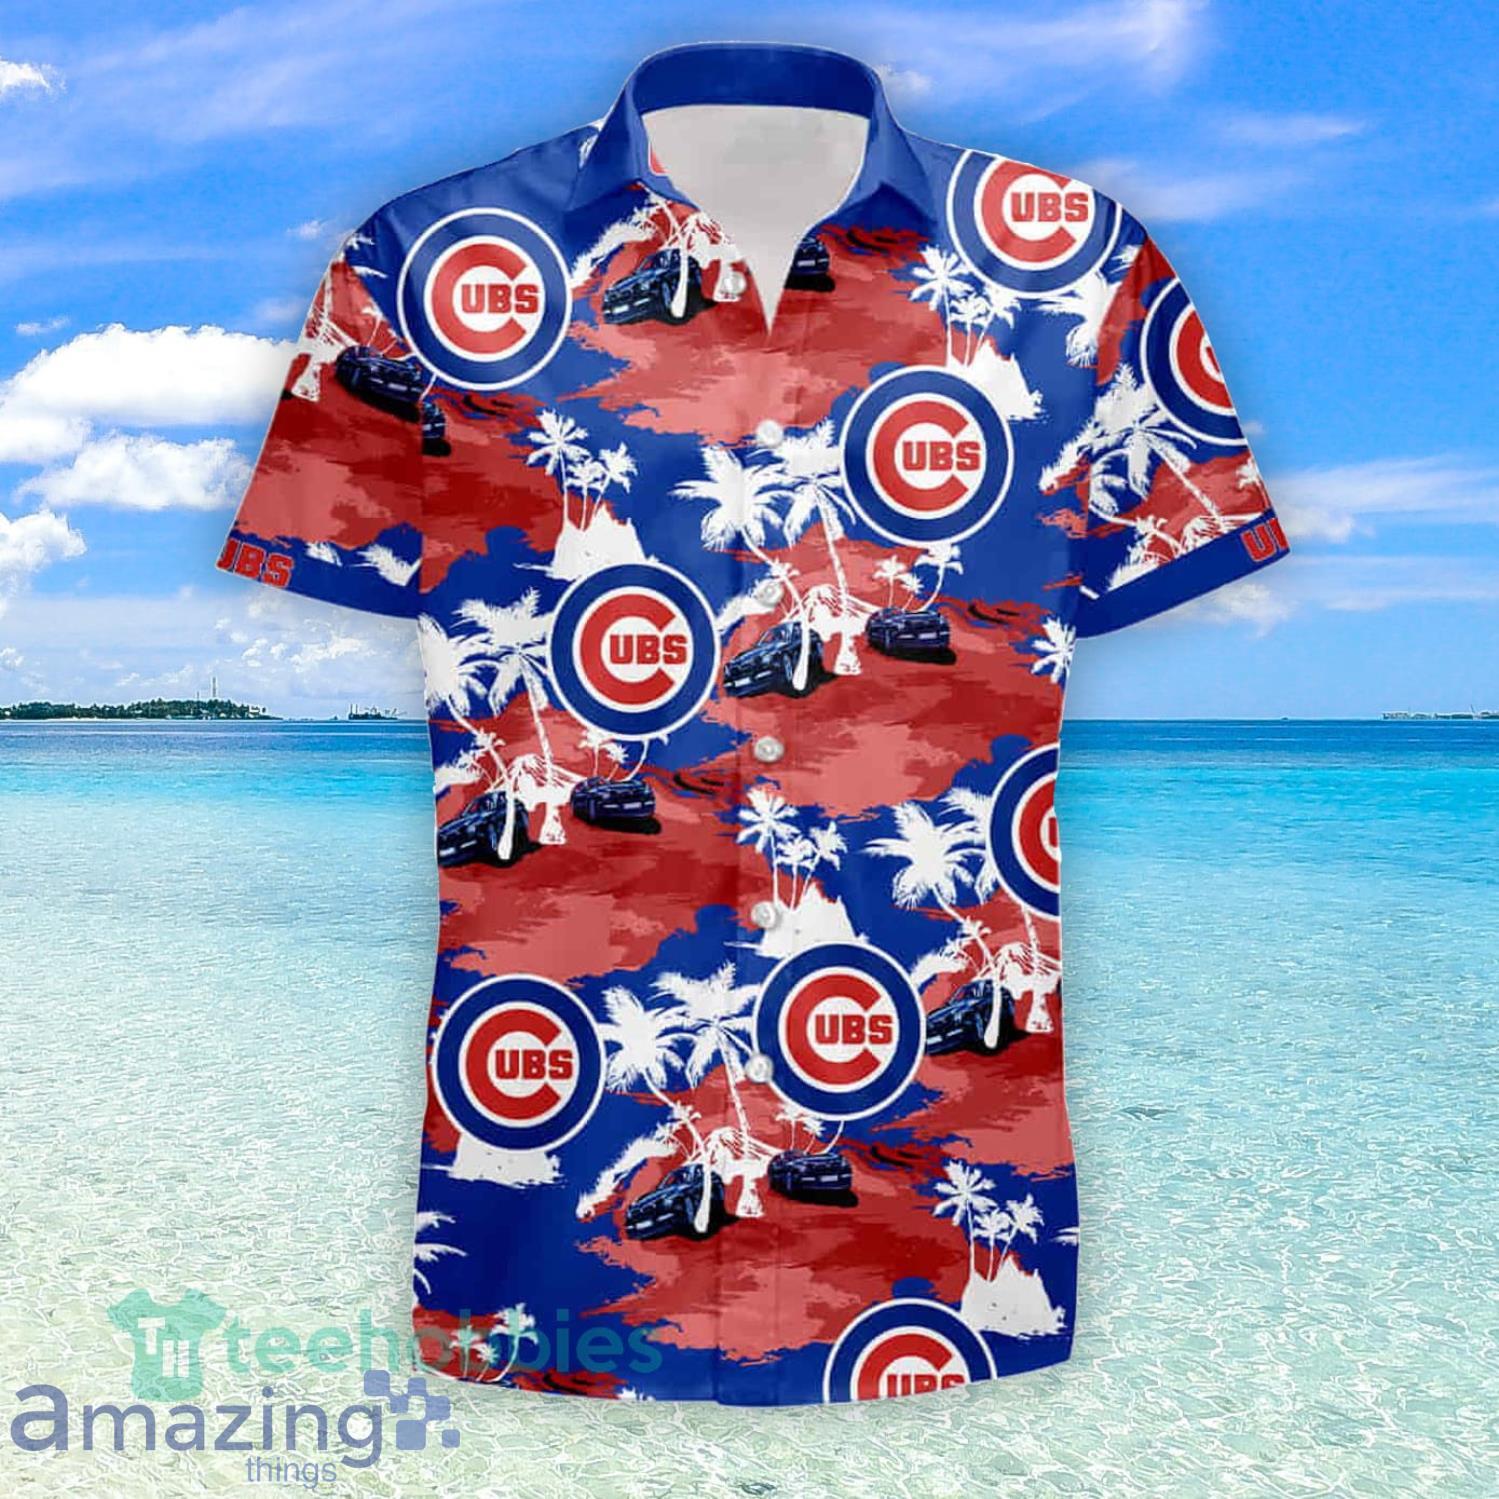 Chicago Cubs Tommy Bahama Summer Gift Hawaiian Shirt And Shorts - Banantees